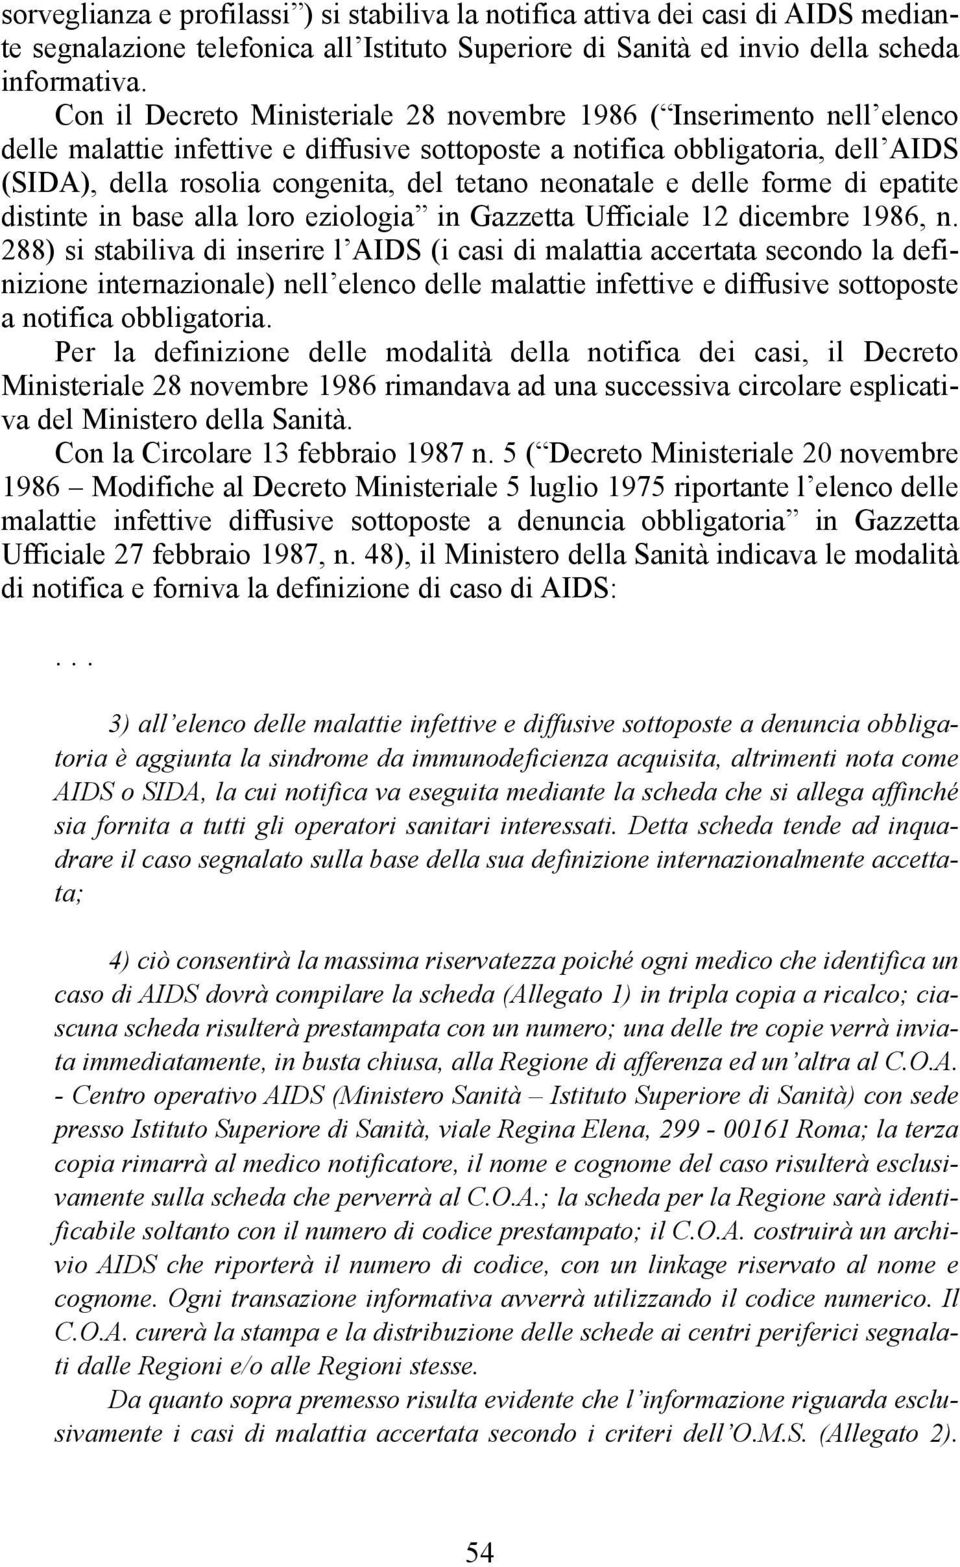 neonatale e delle forme di epatite distinte in base alla loro eziologia in Gazzetta Ufficiale 12 dicembre 1986, n.